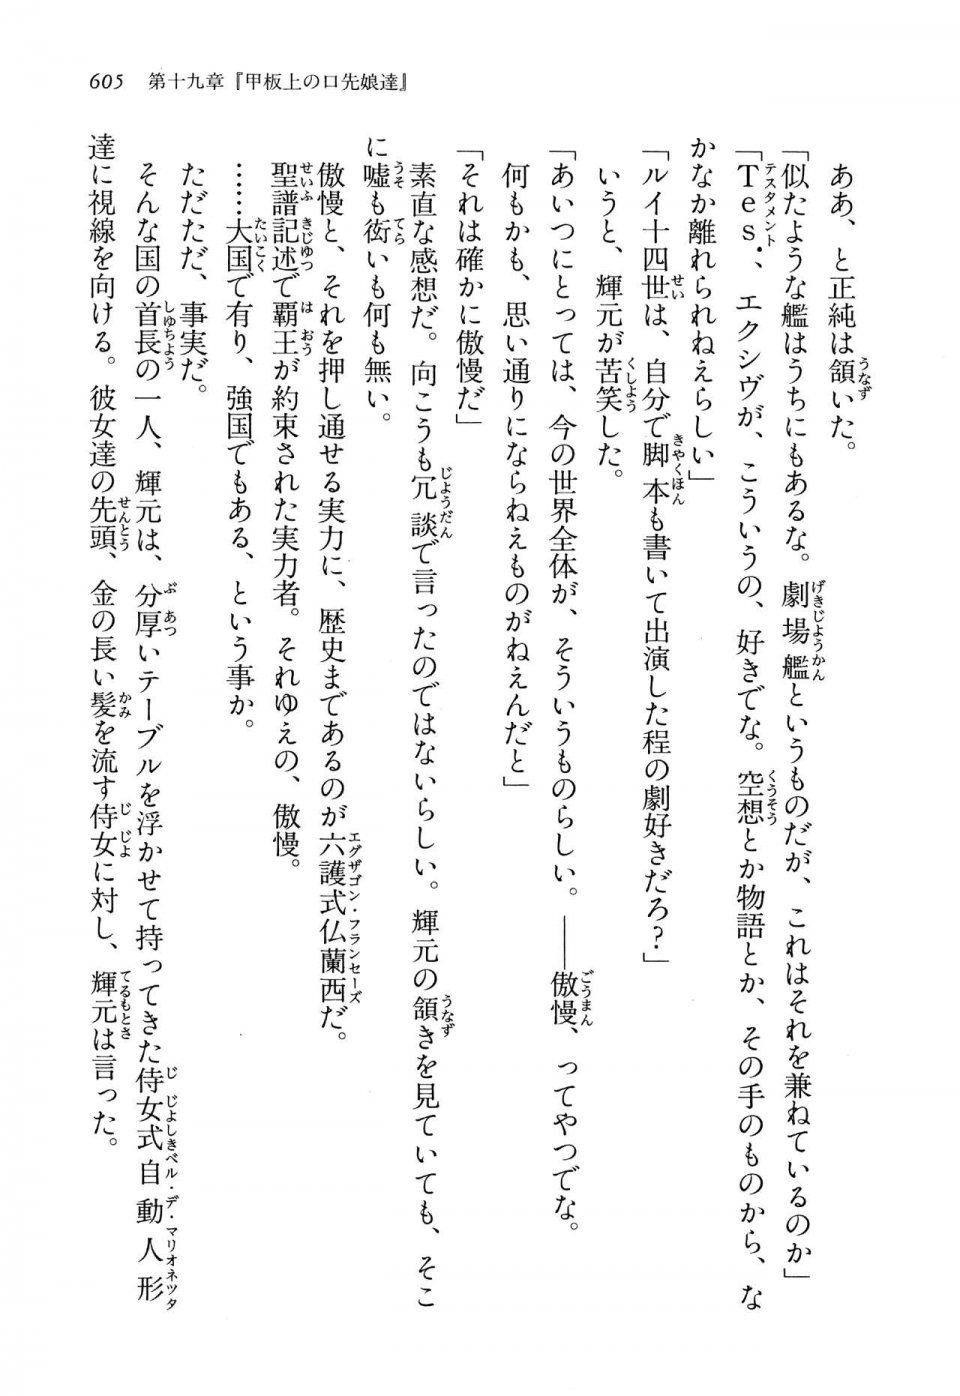 Kyoukai Senjou no Horizon LN Vol 13(6A) - Photo #605